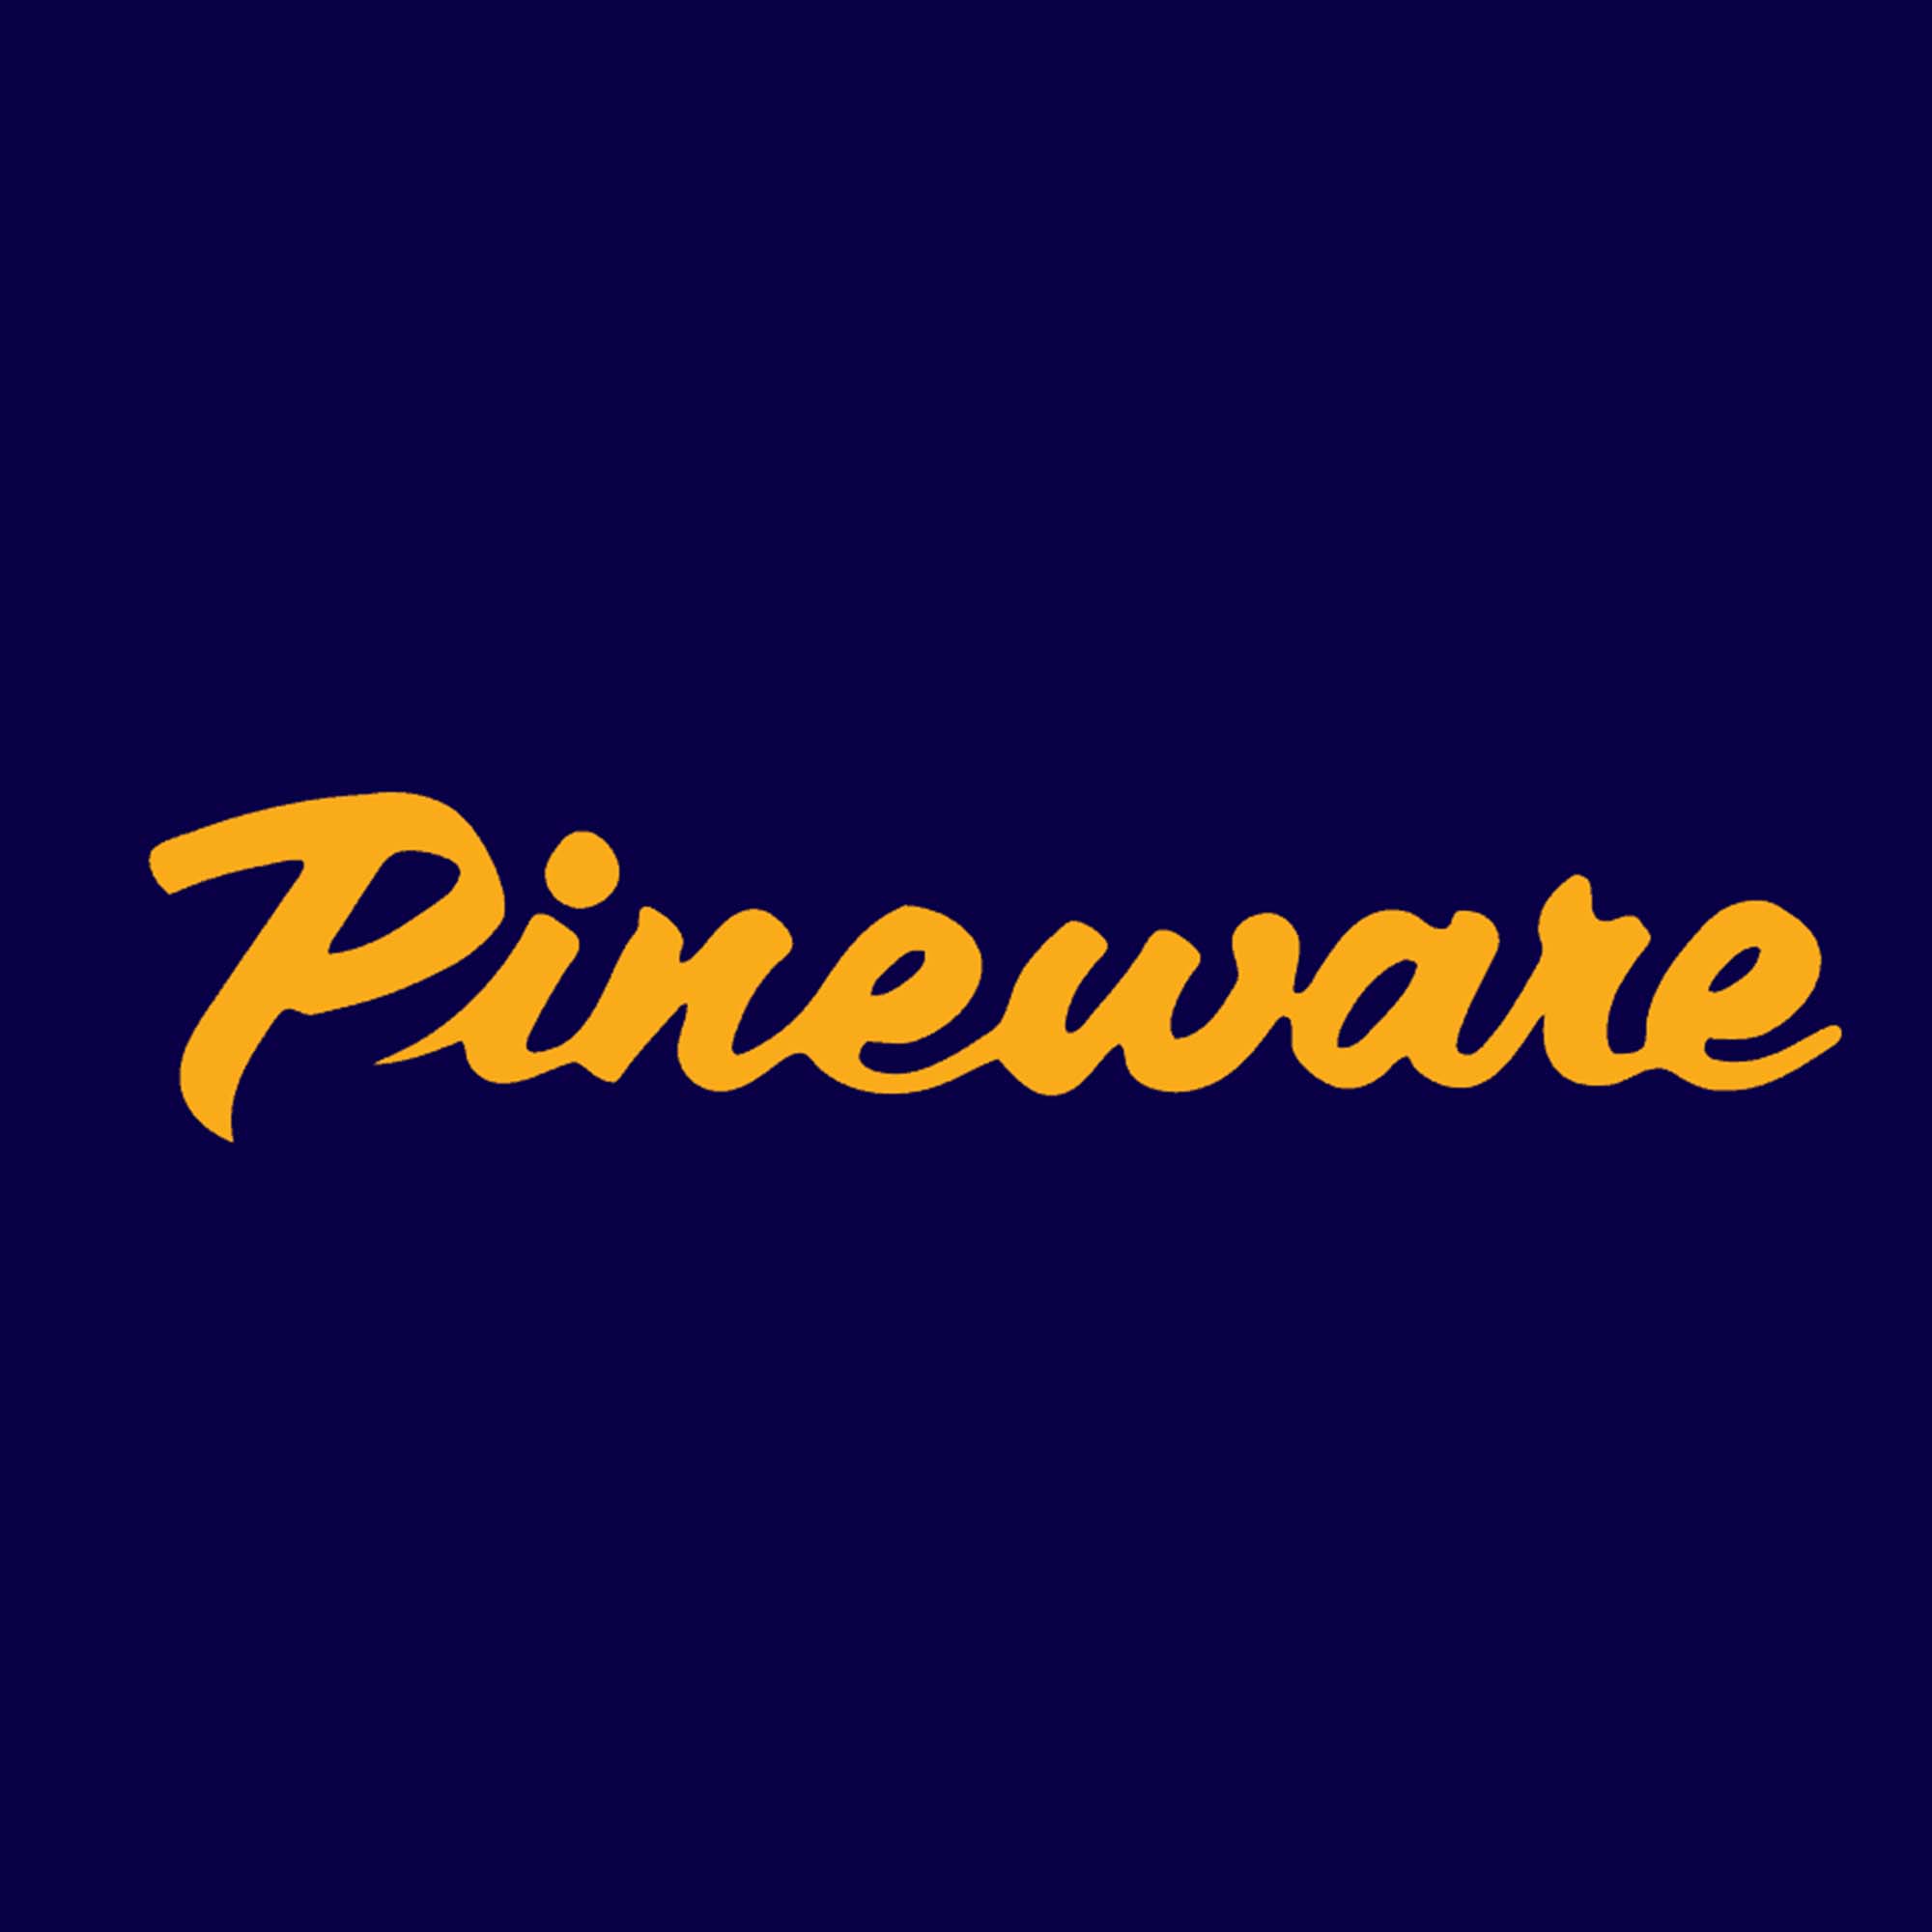 Pineware